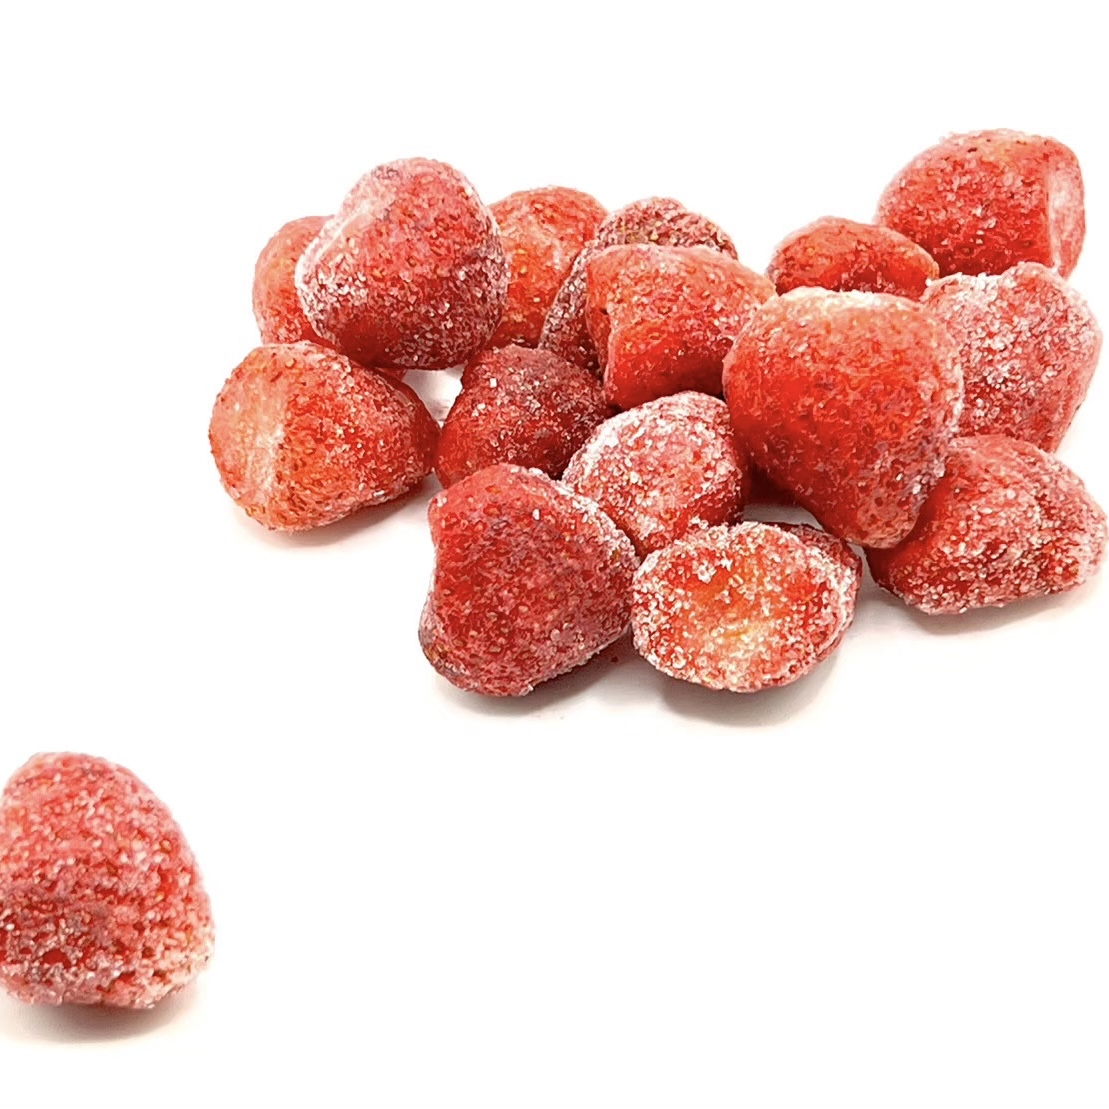 冷凍台灣草莓